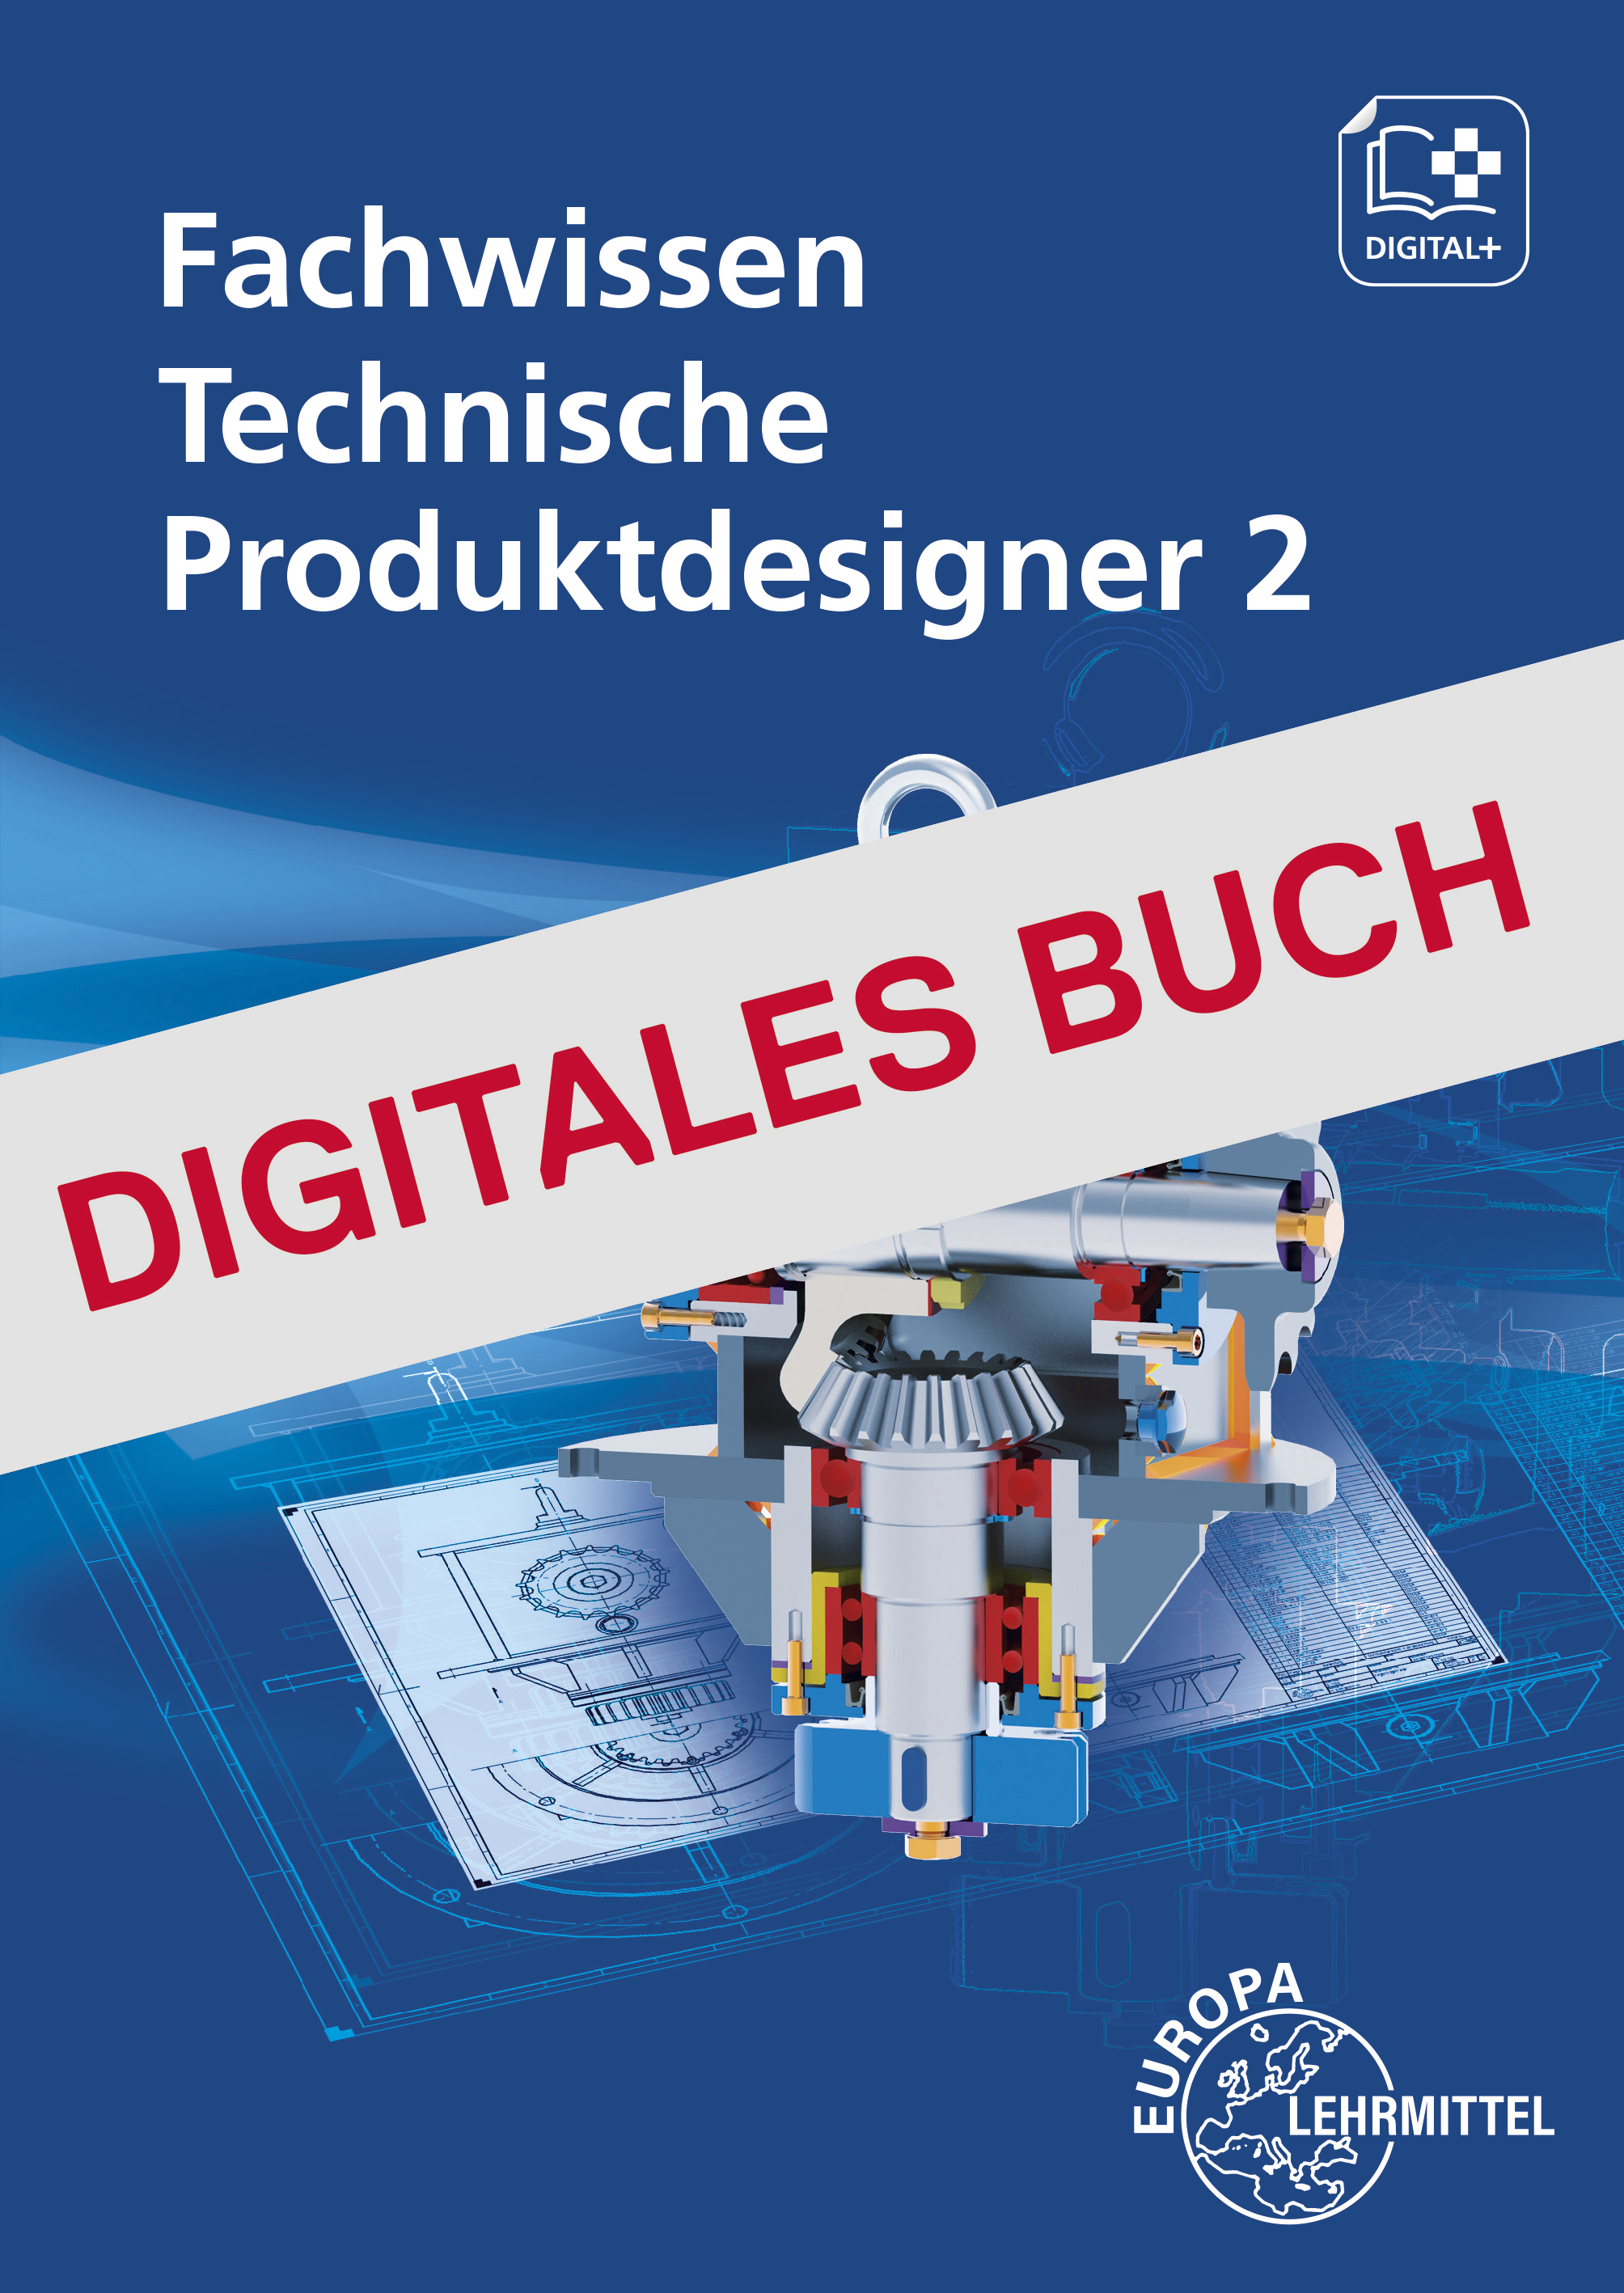 Fachwissen Technische Produktdesigner 2 - Digitales Buch